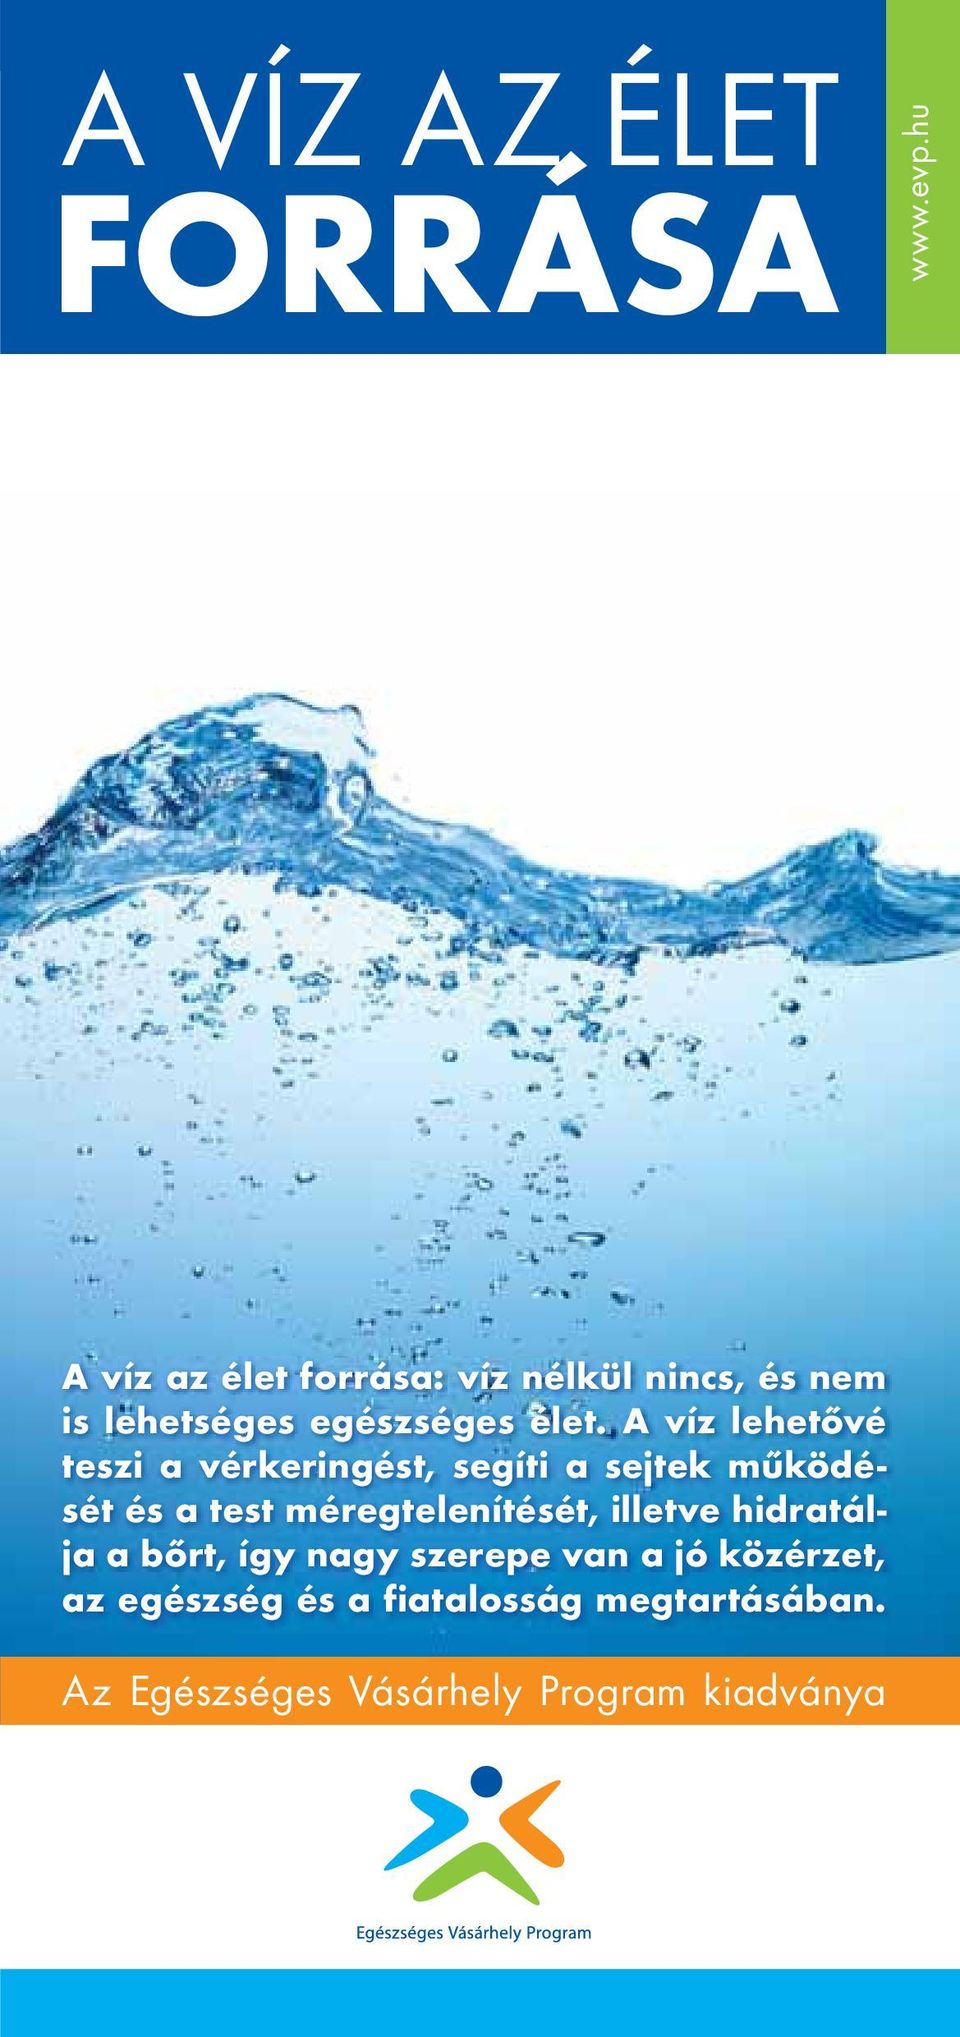 A víz lehetővé teszi a vérkeringést, segíti a sejtek működését és a test